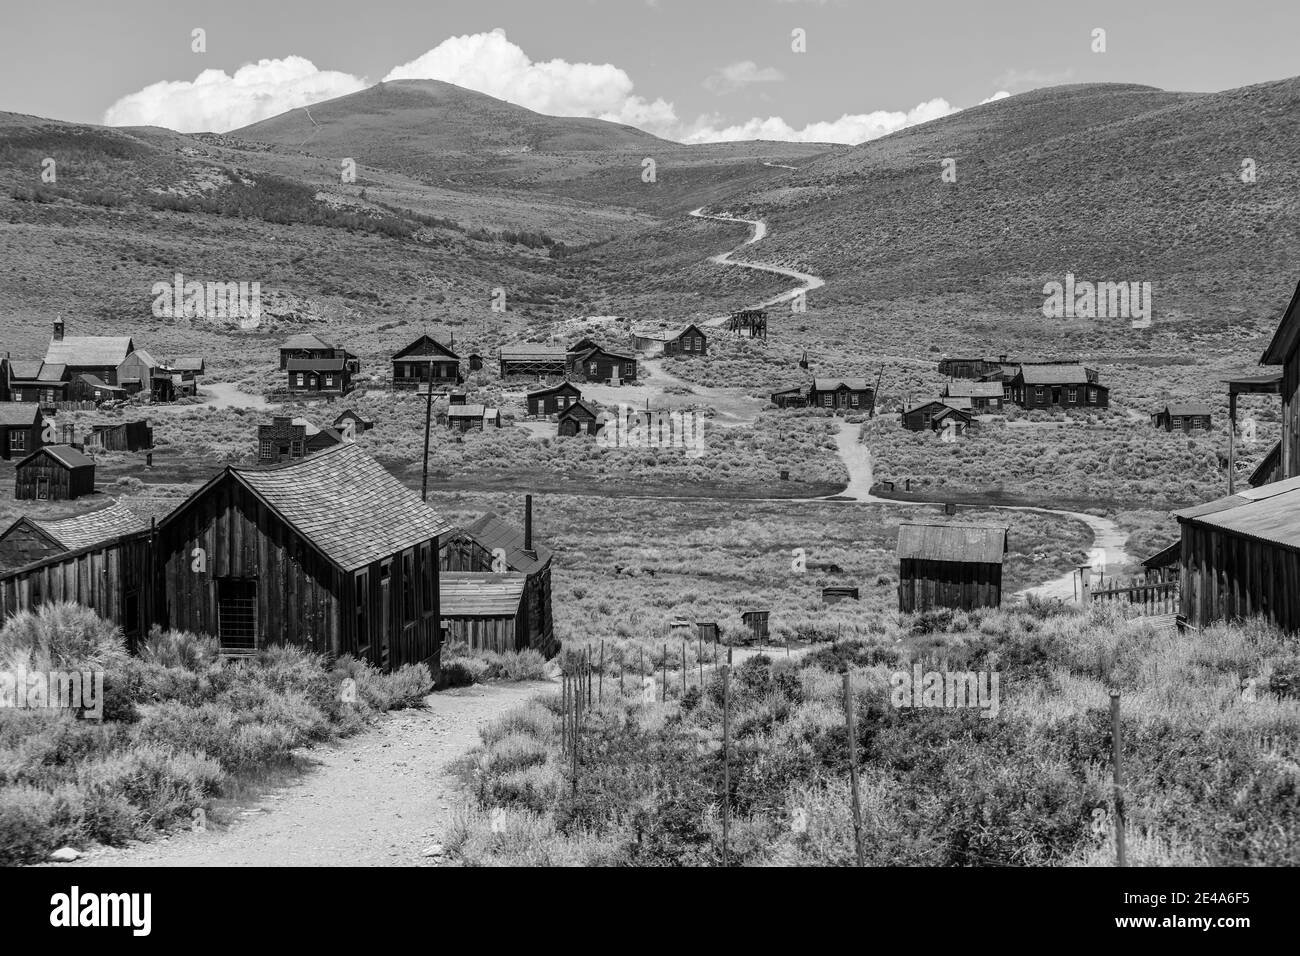 Bodie Wild West Geisterstadt im Bodie State Historic Park in den kalifornischen Sierra Nevada Bergen in schwarz und weiß. Stockfoto